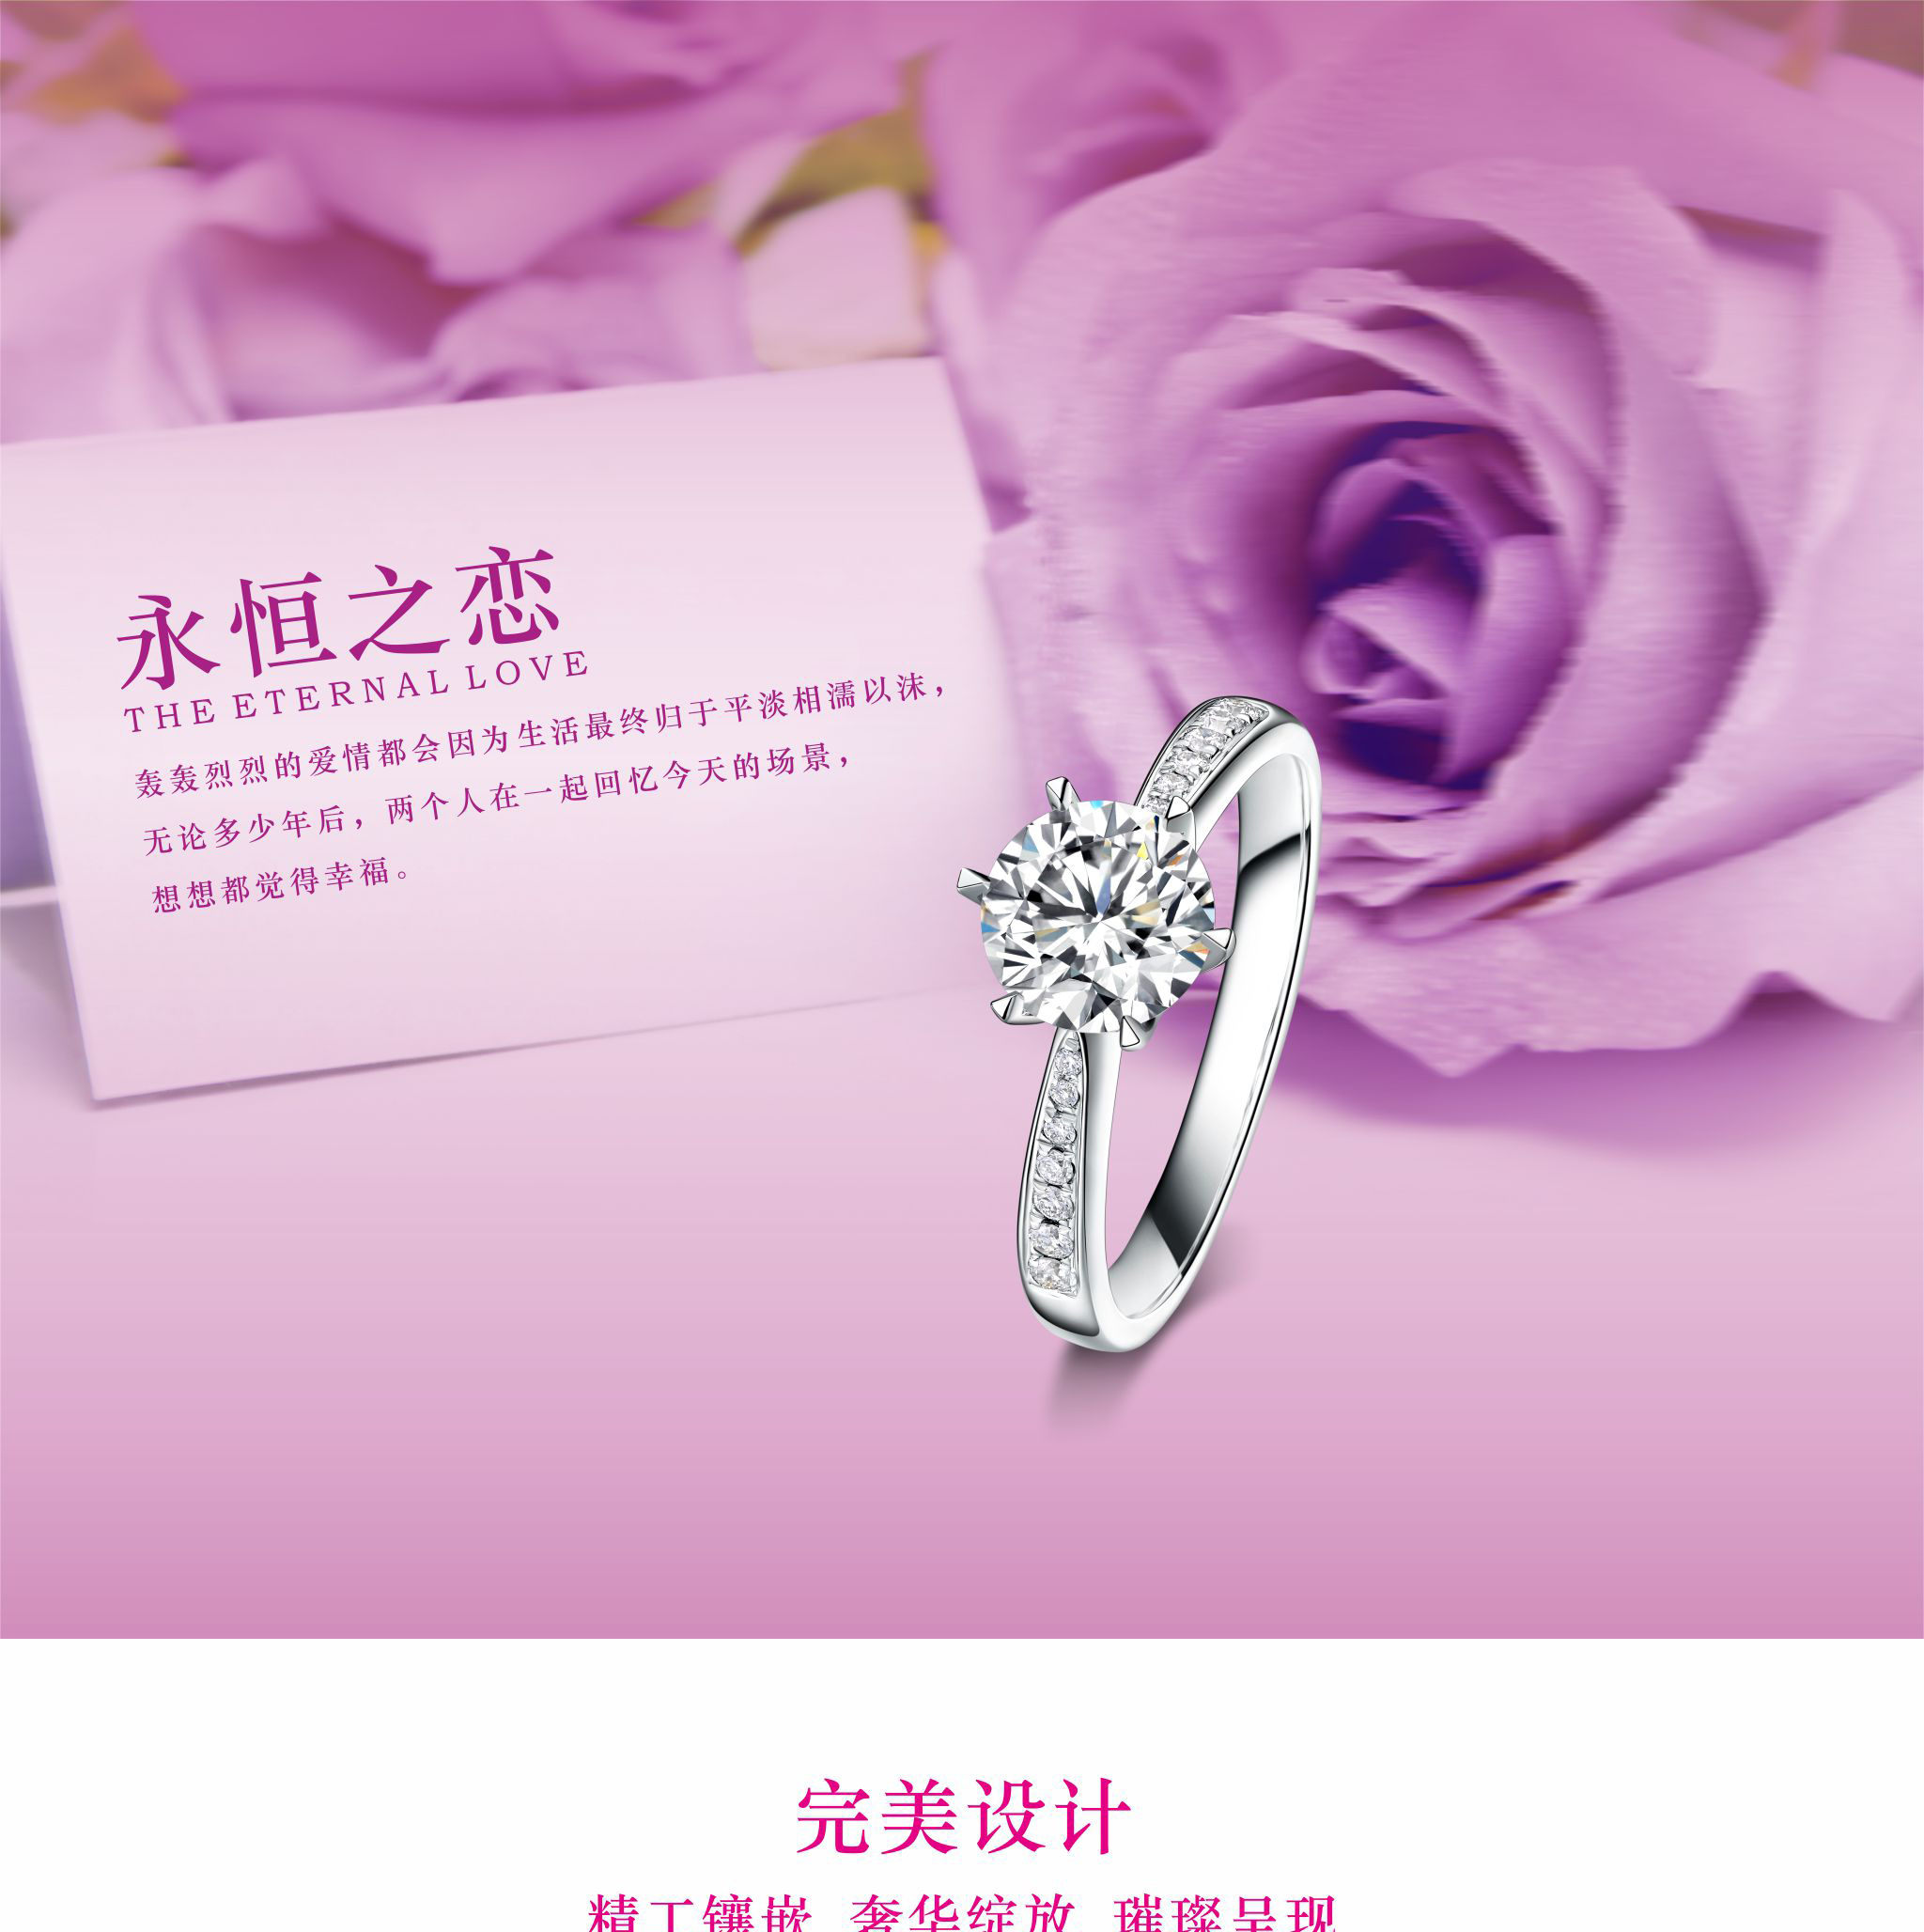 【永恒之恋】专属定制求婚钻石戒指宝利福珠宝